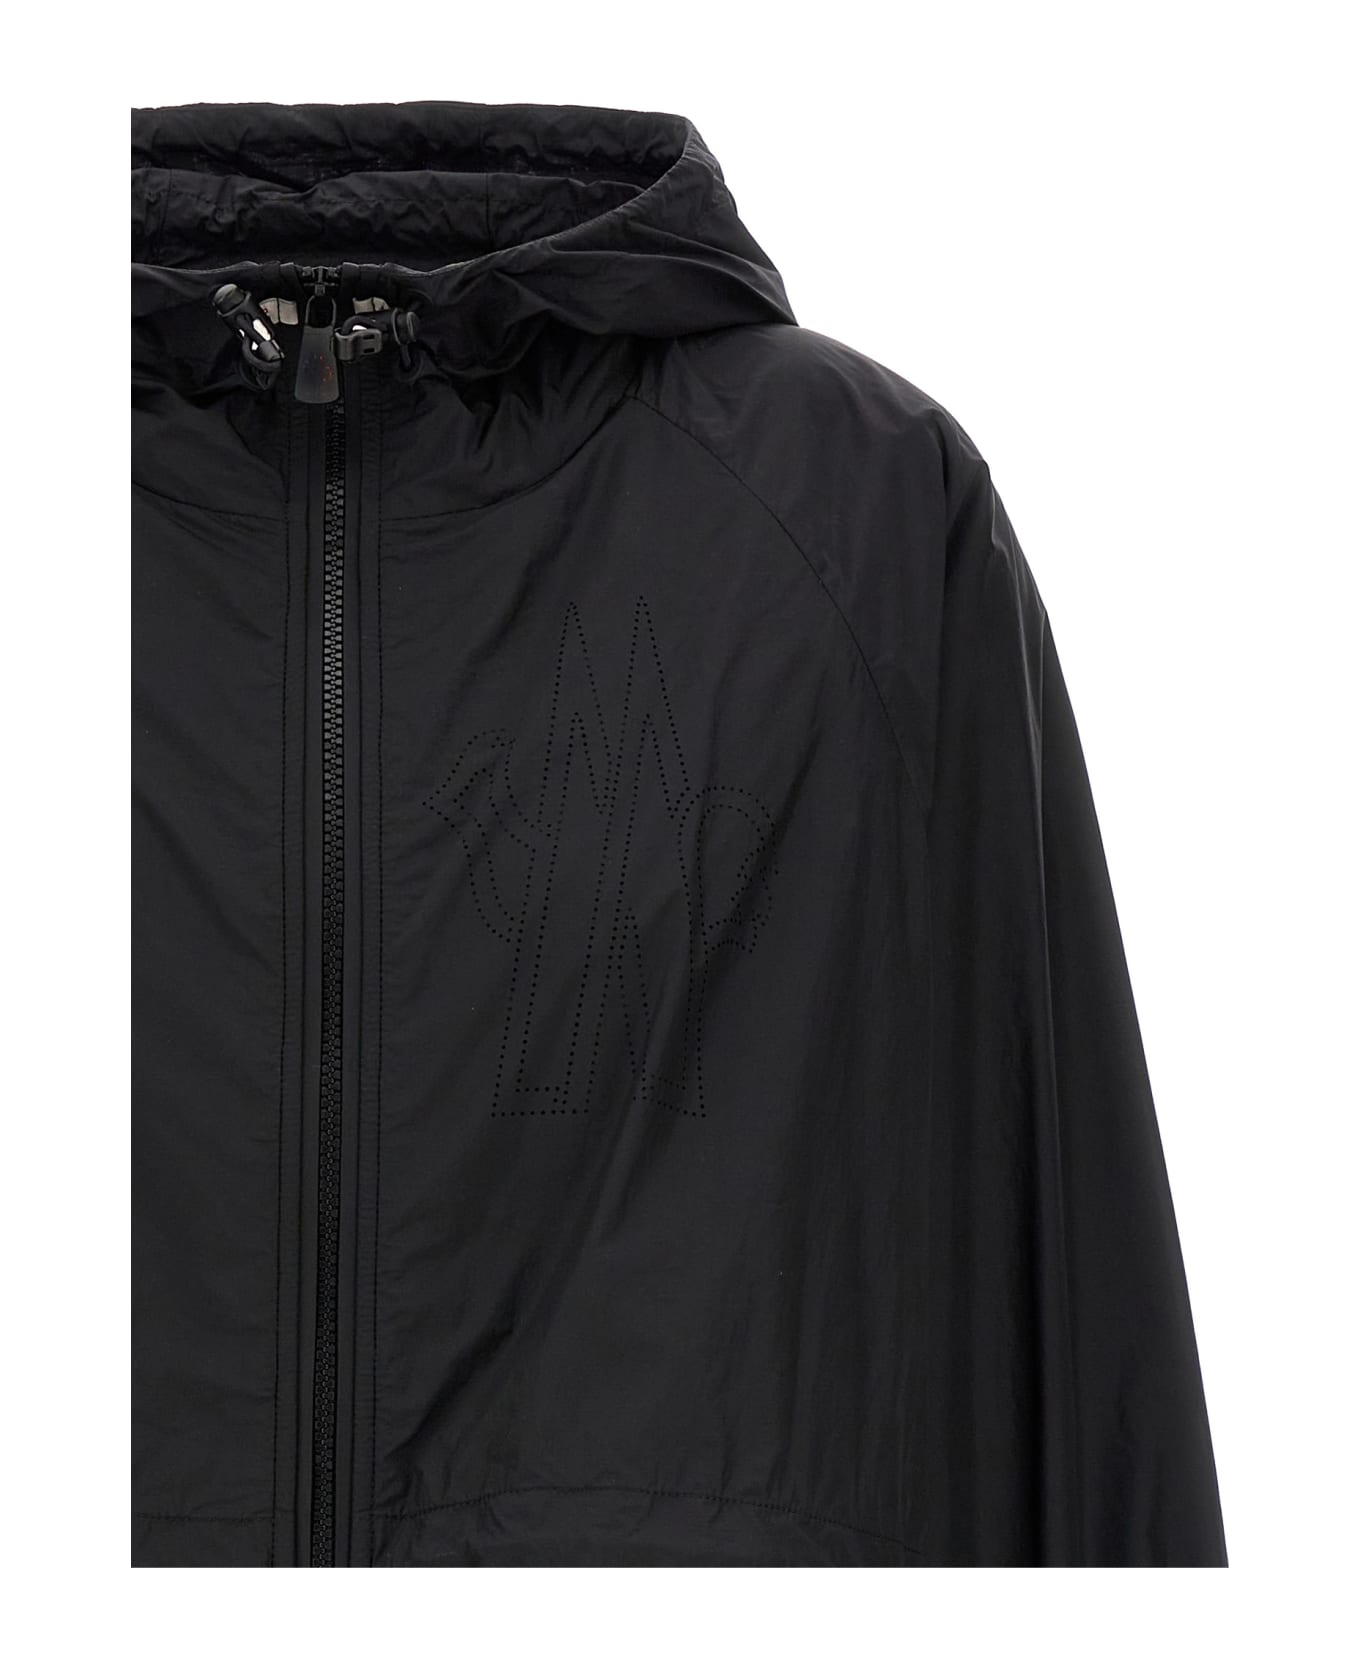 Moncler Grenoble Overshirt Insert Hoodie - Black   ジャケット